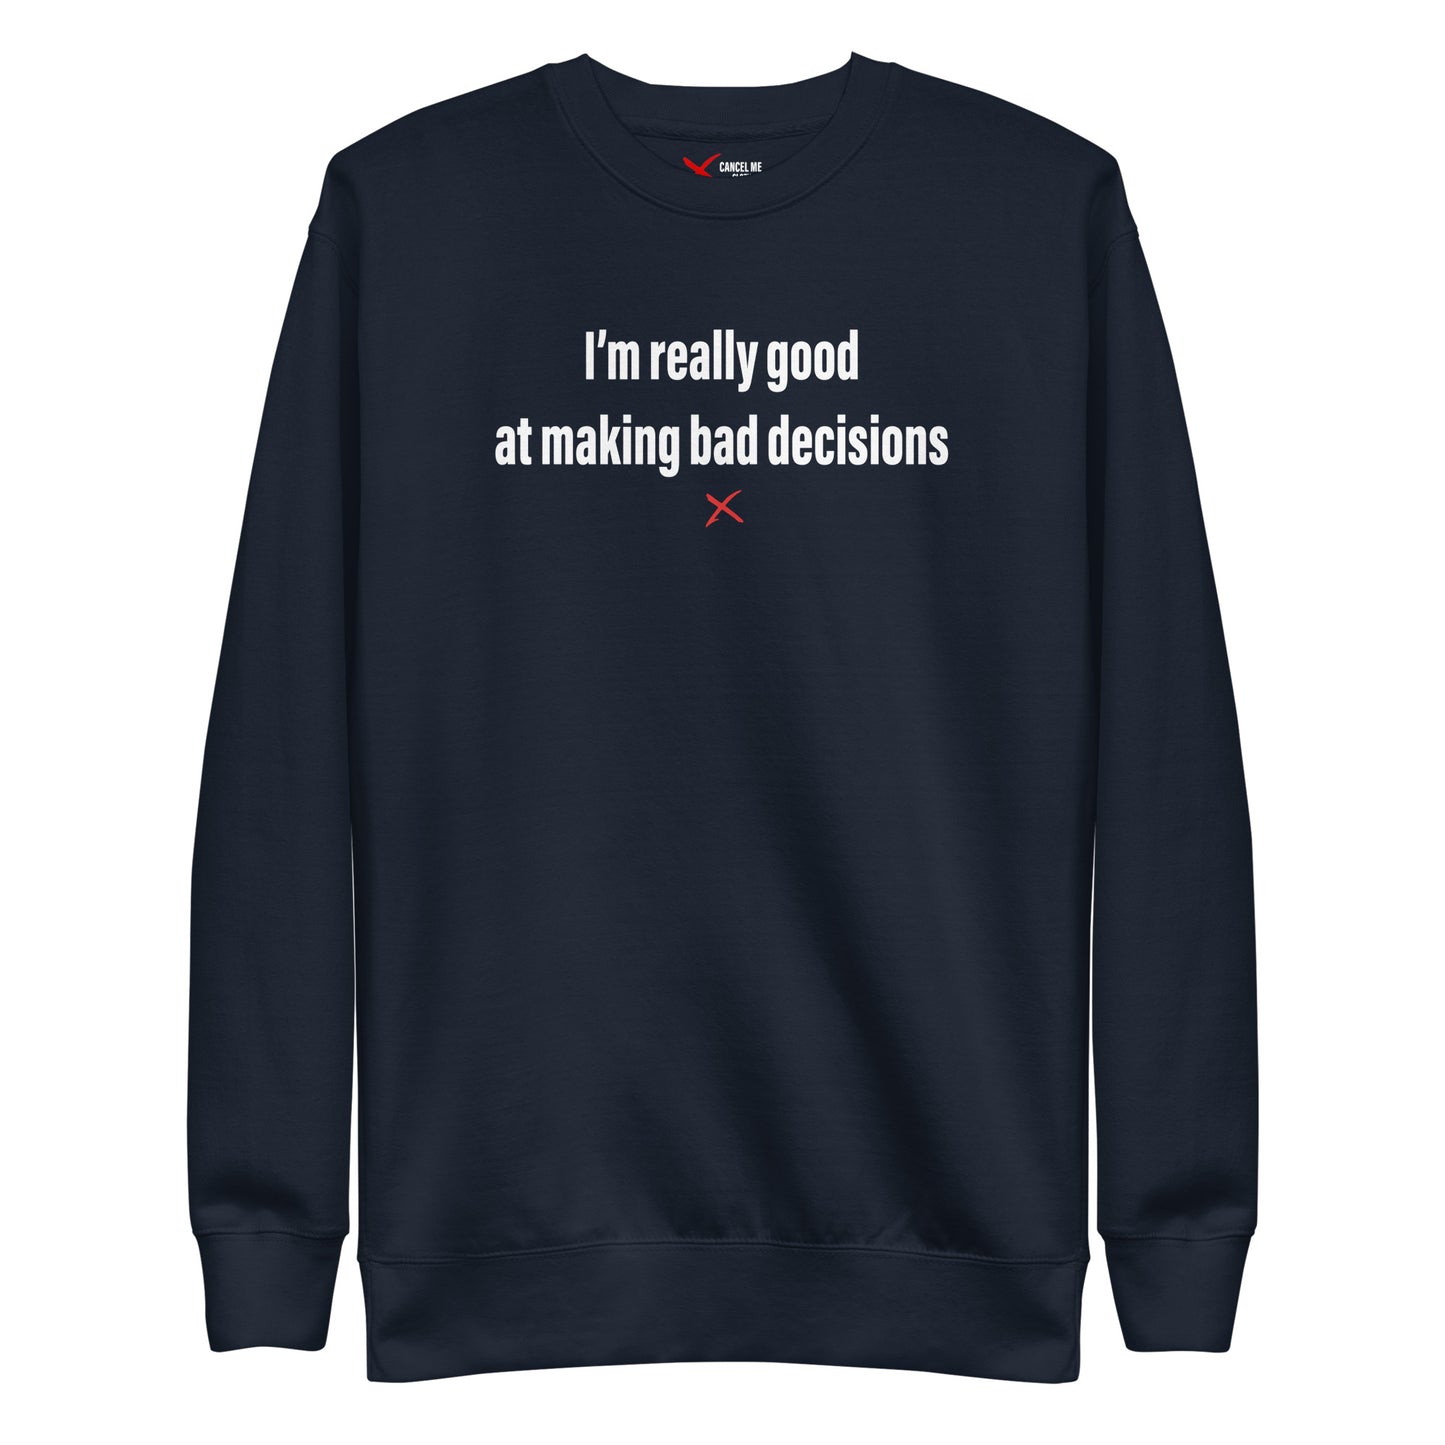 I'm really good at making bad decisions - Sweatshirt